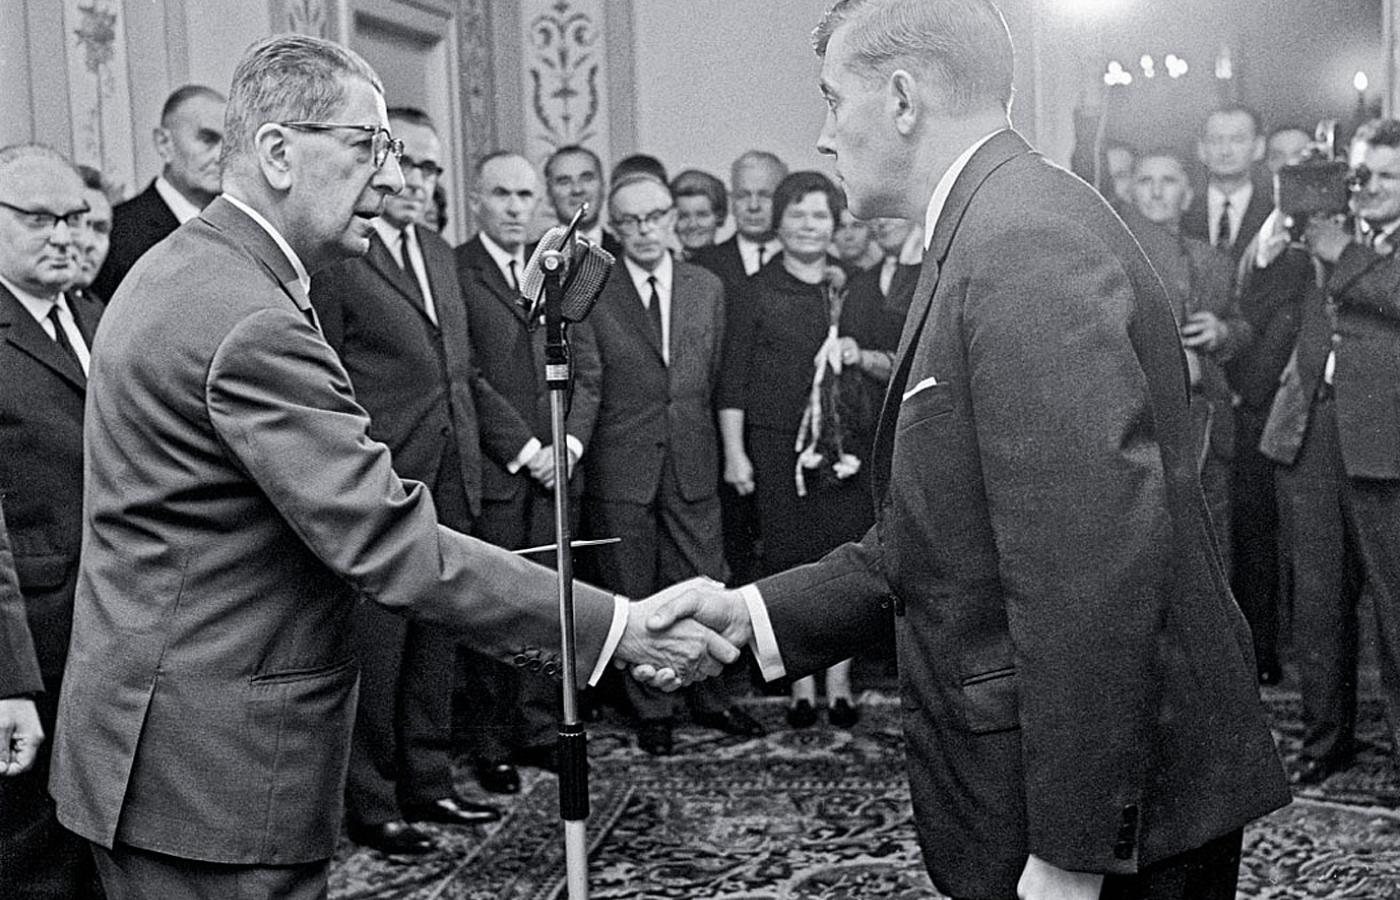 Nadanie tytułu profesorskiego w Belwederze. Zastępca przewodniczącego Rady Państwa Stanisław Kulczyński (z lewej) gratuluje profesorowi nadzwyczajnemu, architektowi Wiktorowi Zinowi, 1967 r.